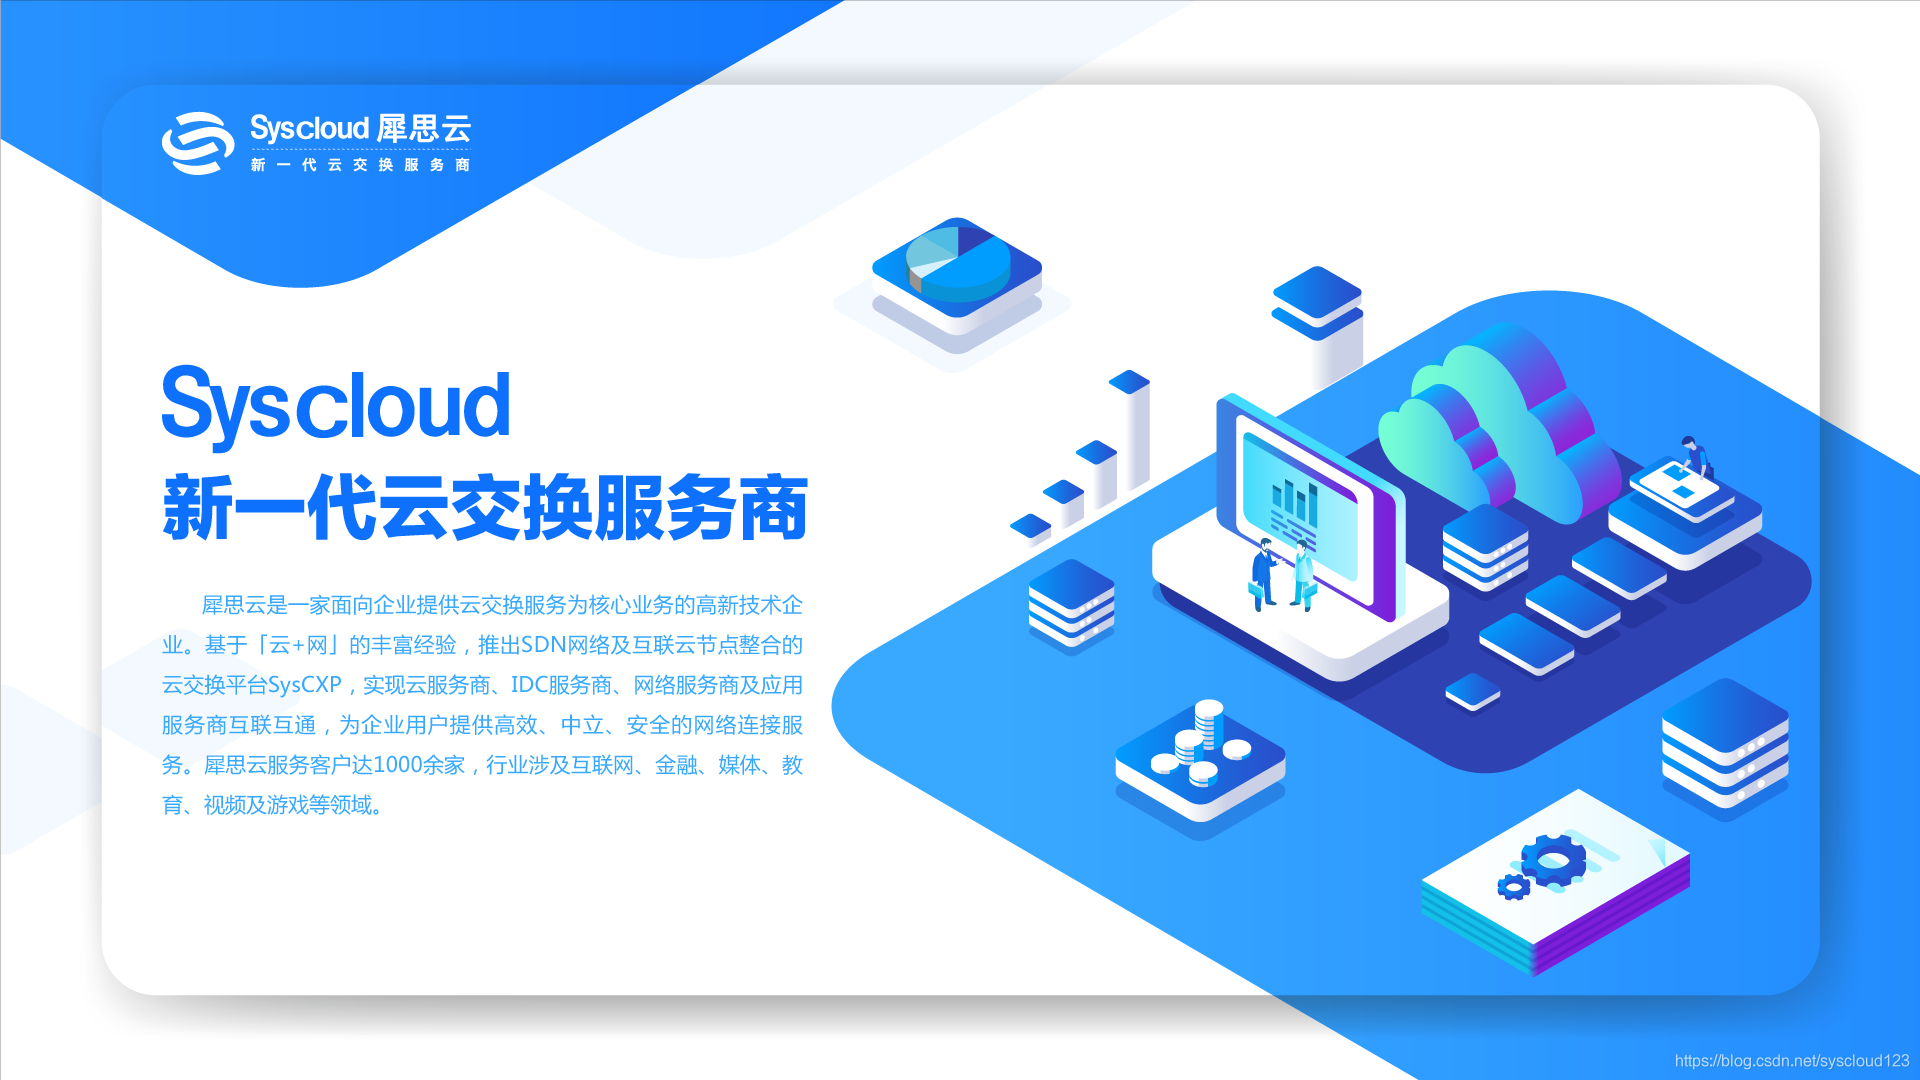 2018中国SD-WAN峰会 | 犀思云掀起企业混合专网新浪潮